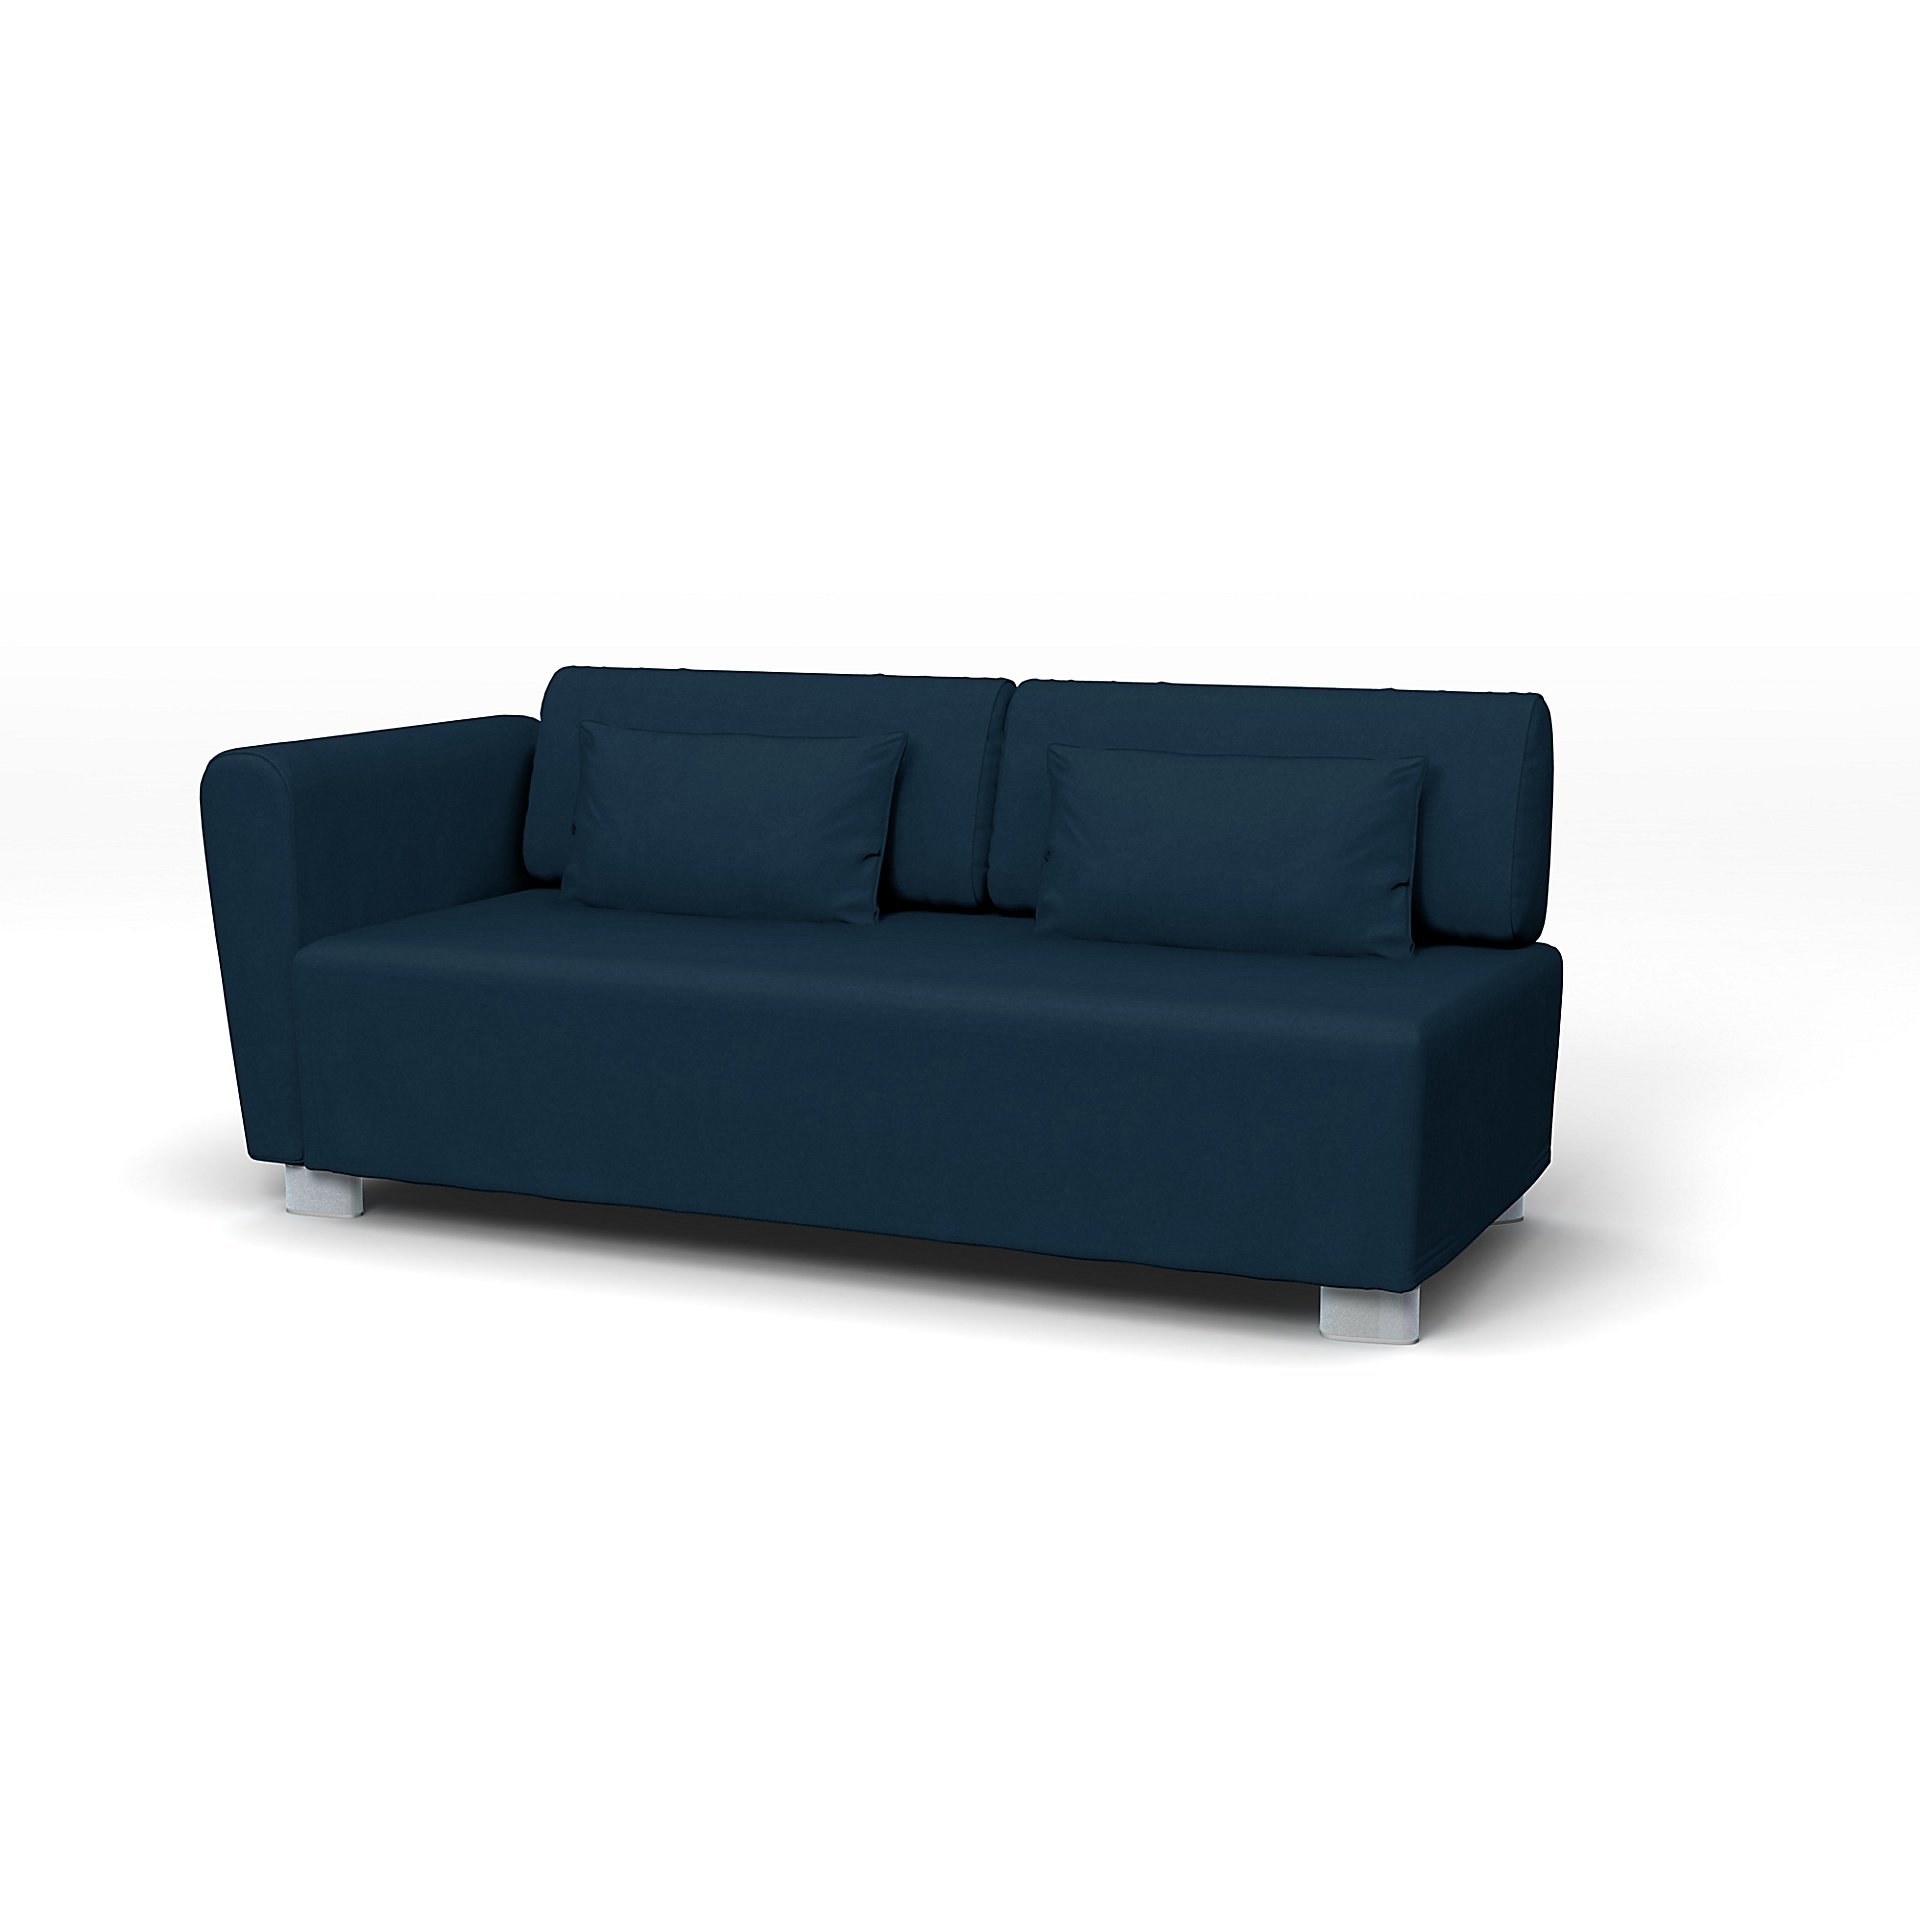 IKEA - Mysinge 2 Seater Sofa with Armrest Cover, Midnight, Velvet - Bemz